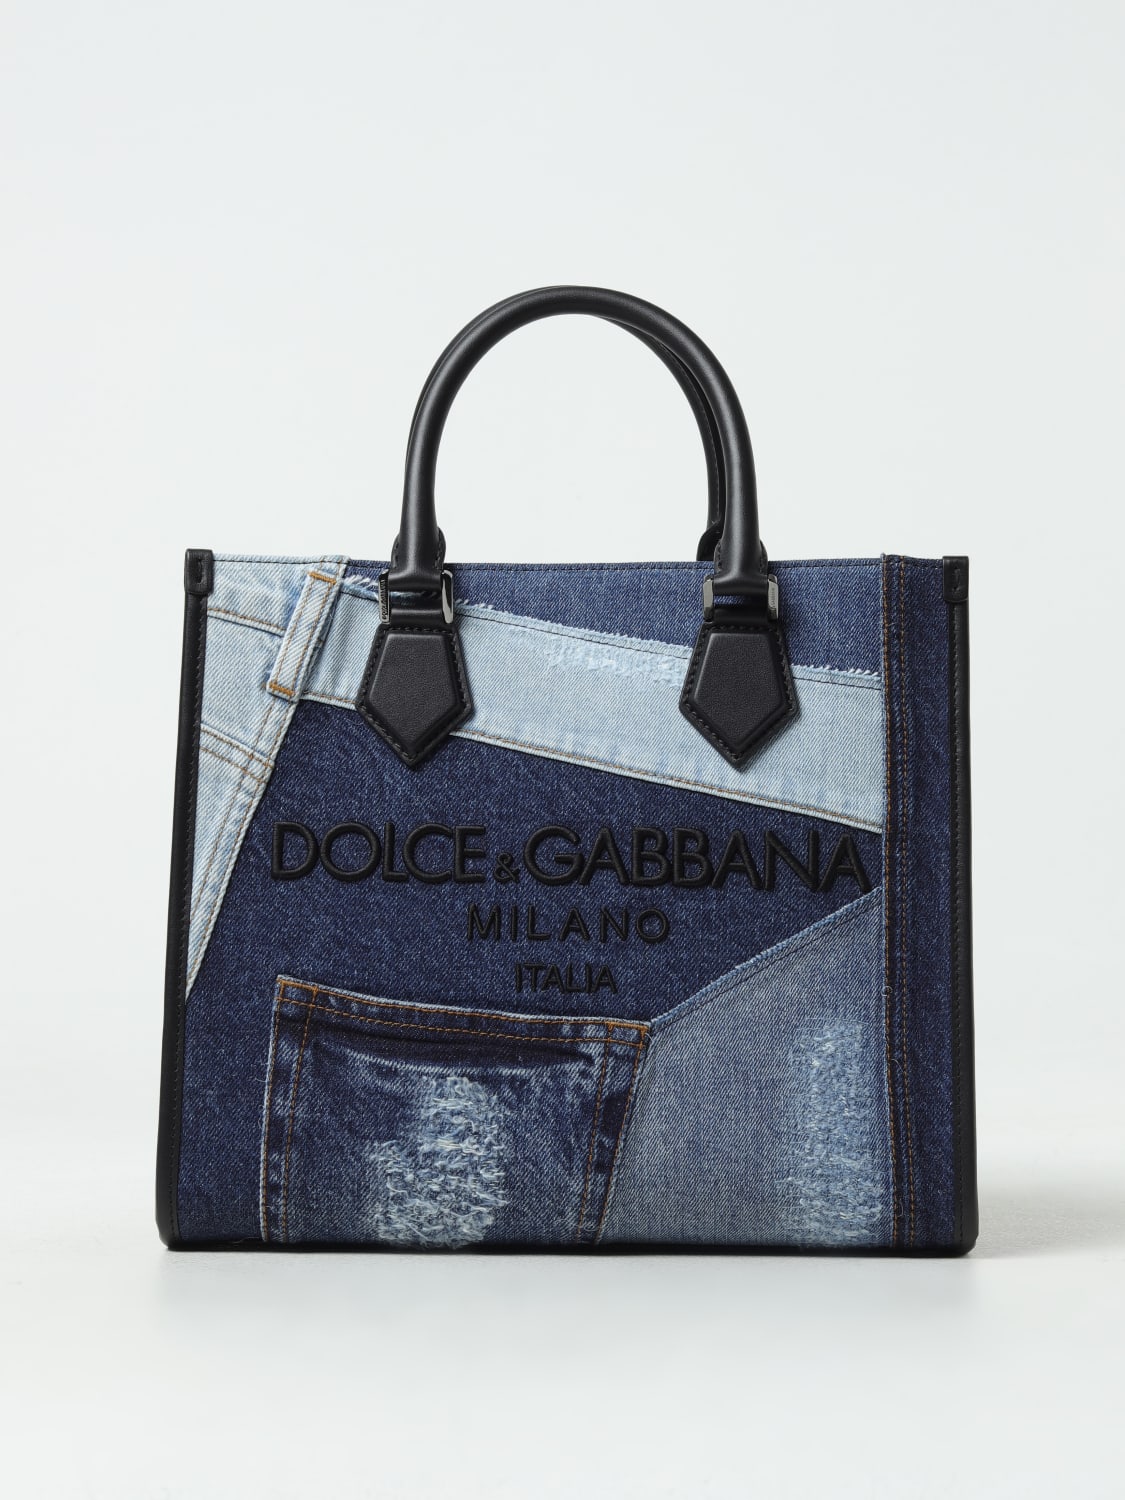 Dolce & Gabbana female Multicolor